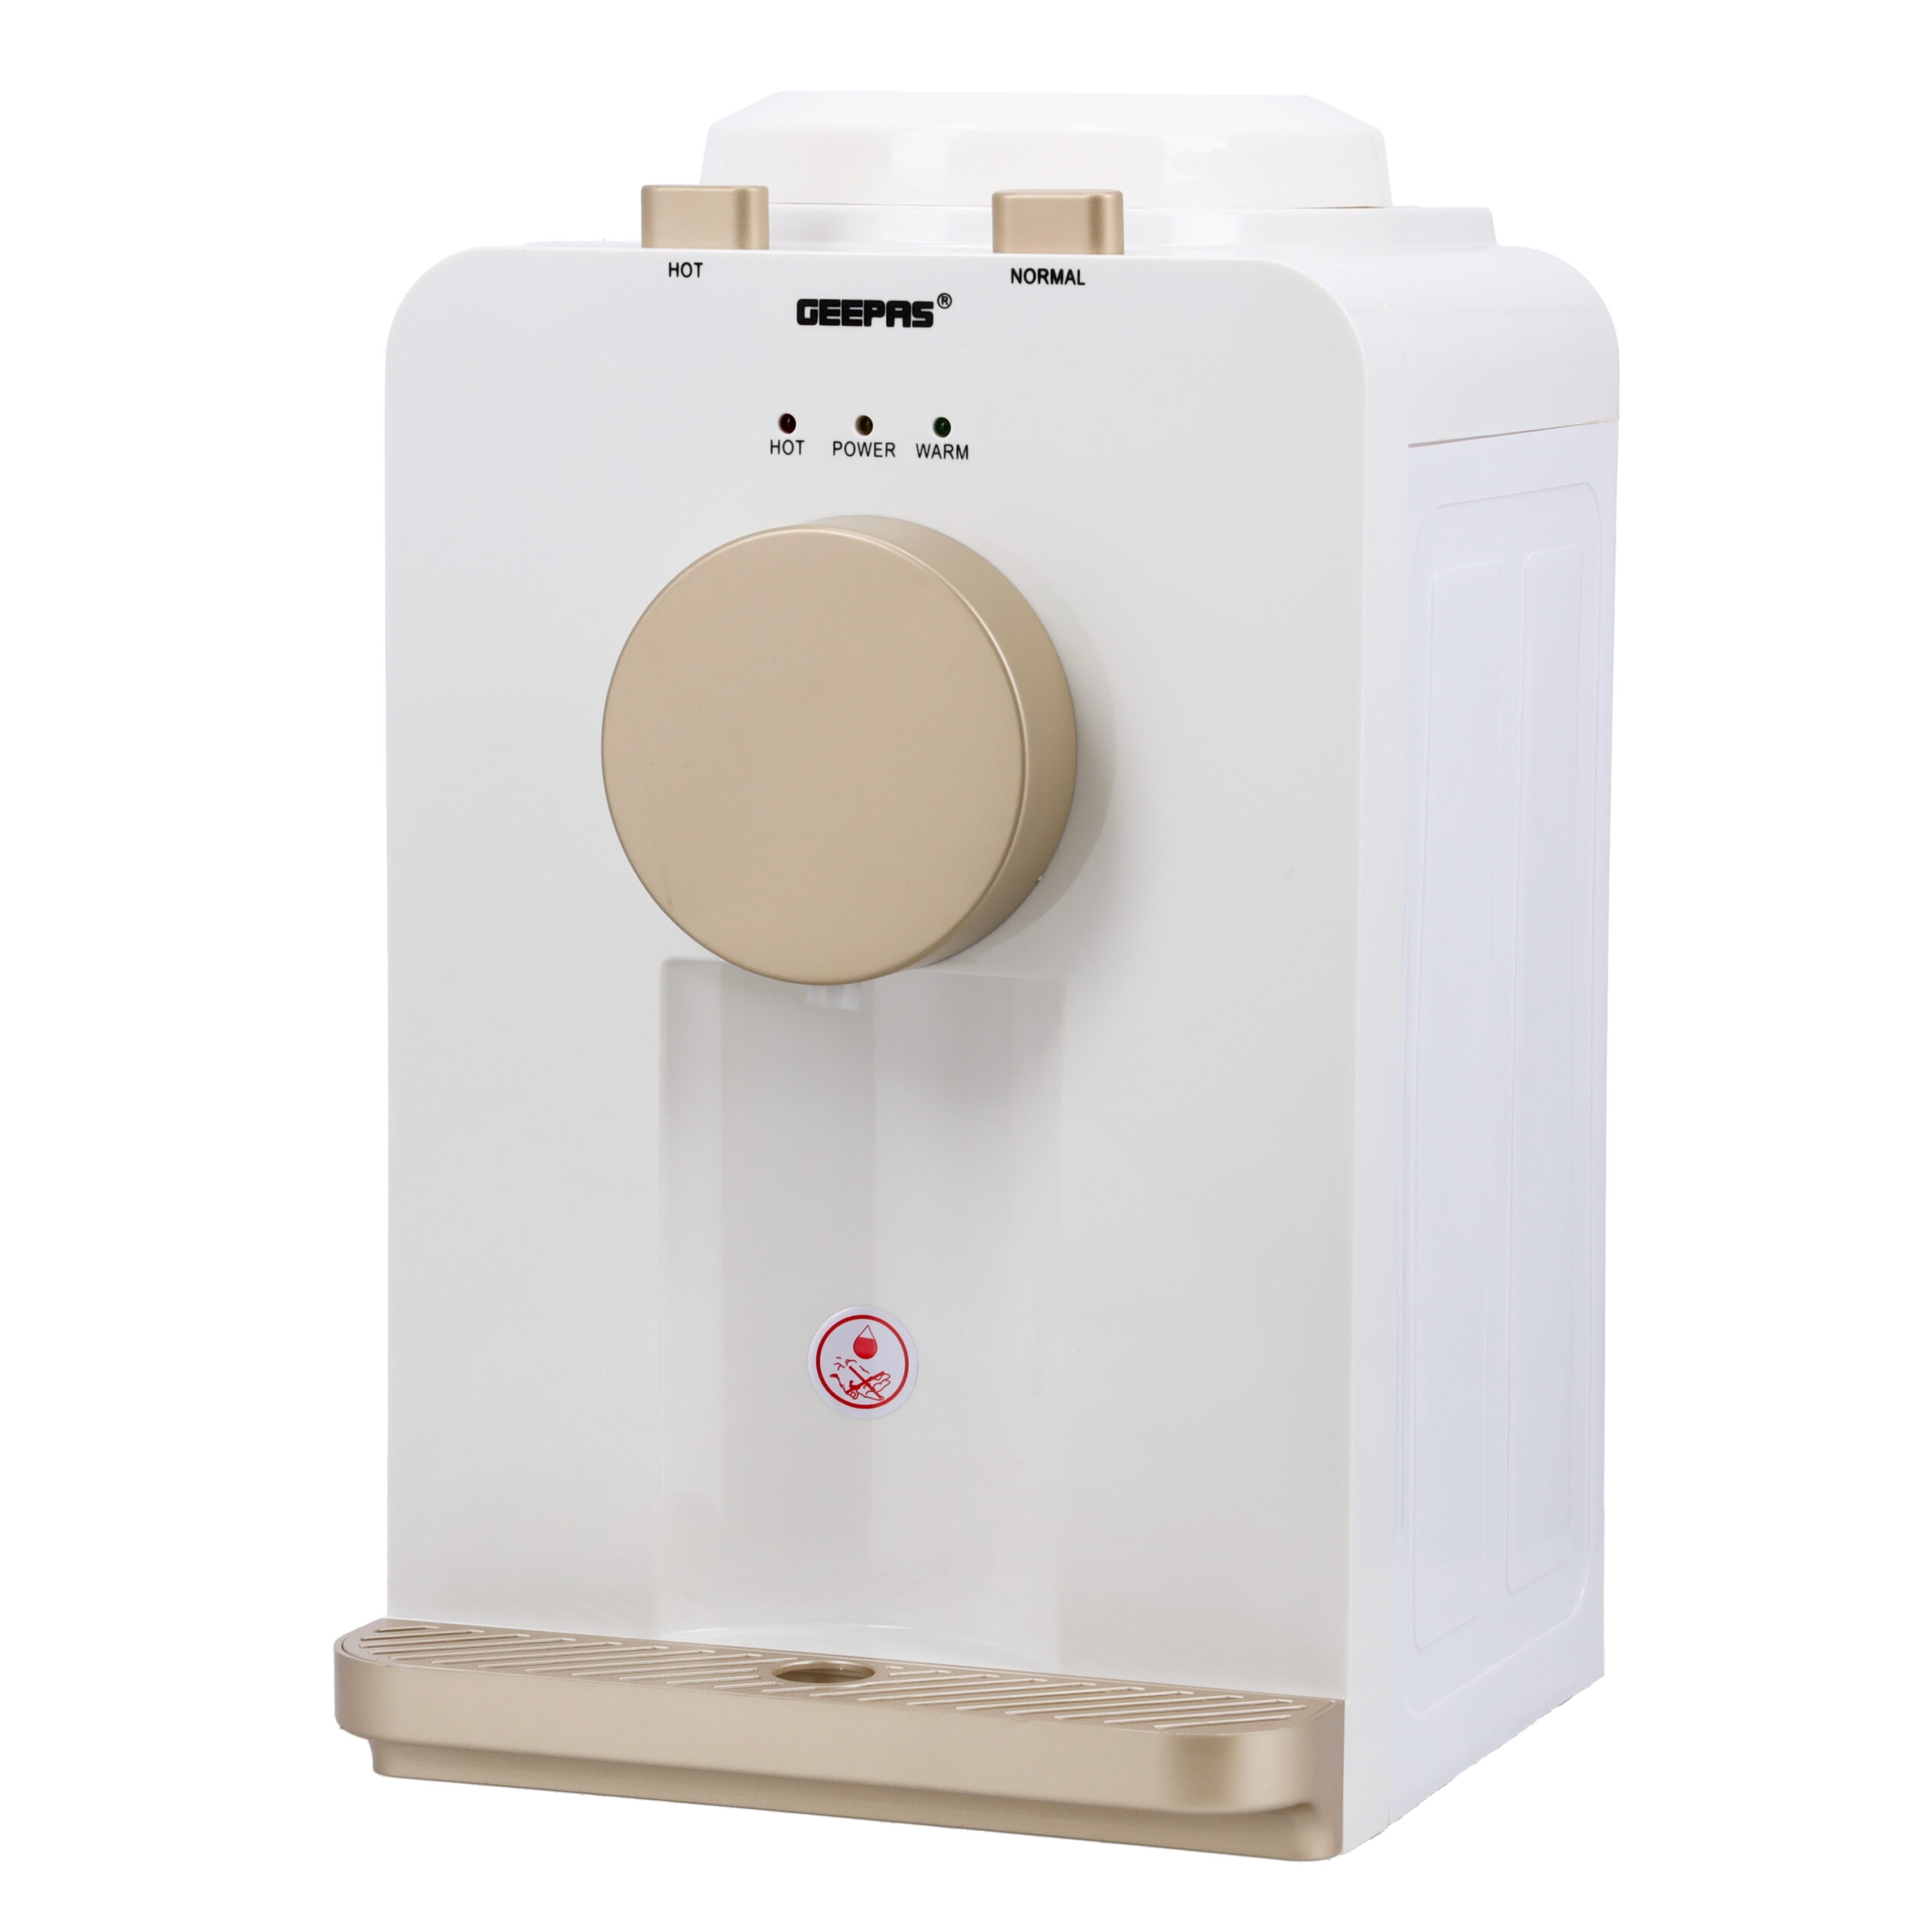 سخان ماء كهربائي بقوة 500 واط Geepas Hot And Normal Water Dispenser - Geepas - 6}